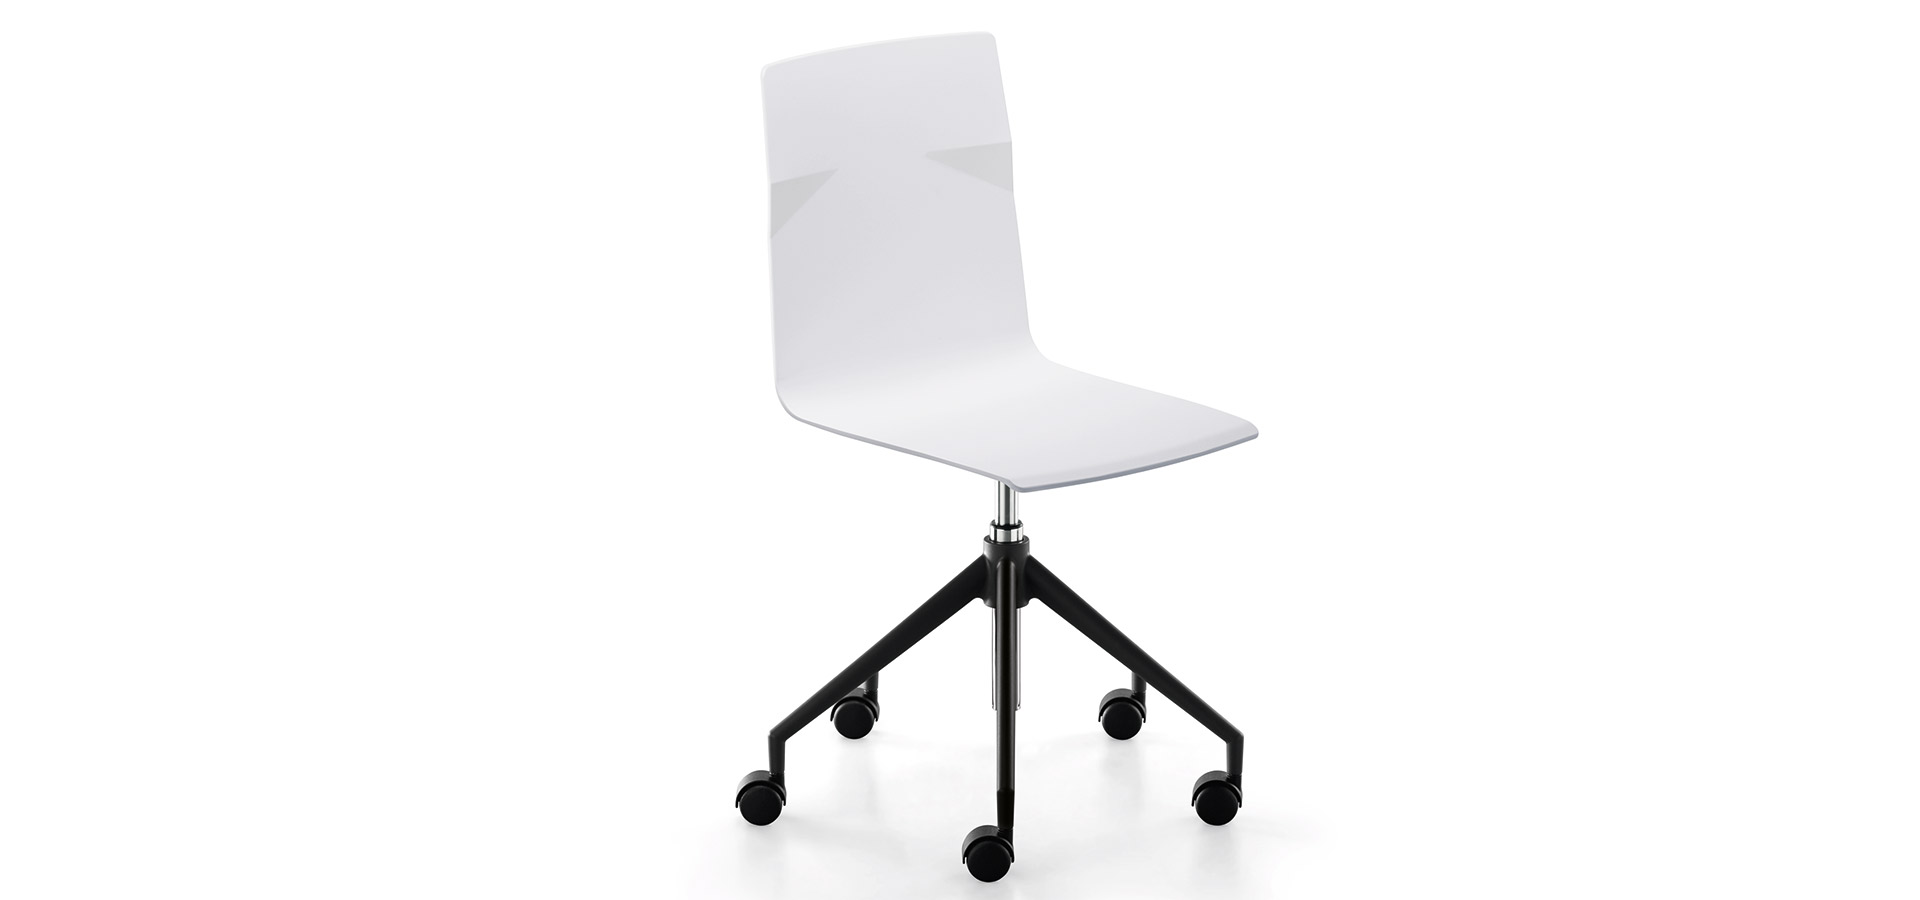 Silla contract Meet Chair - Modelos - Silla giratoria